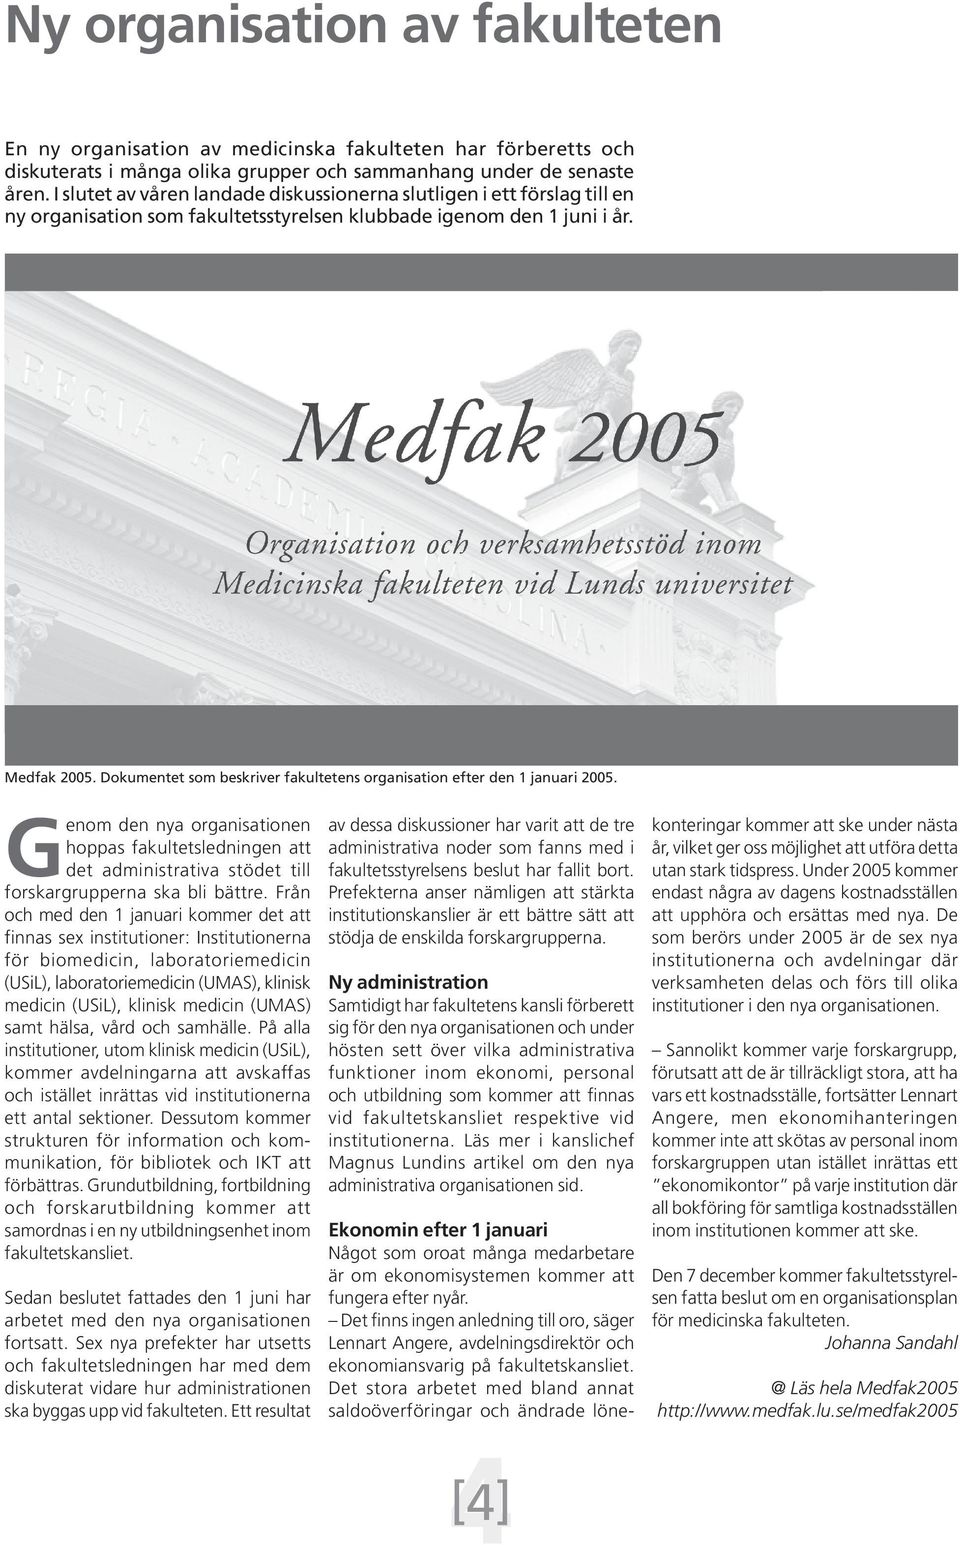 Dokumentet som beskriver fakultetens organisation efter den 1 januari 2005. Genom den nya organisationen hoppas fakultetsledningen att det administrativa stödet till forskargrupperna ska bli bättre.